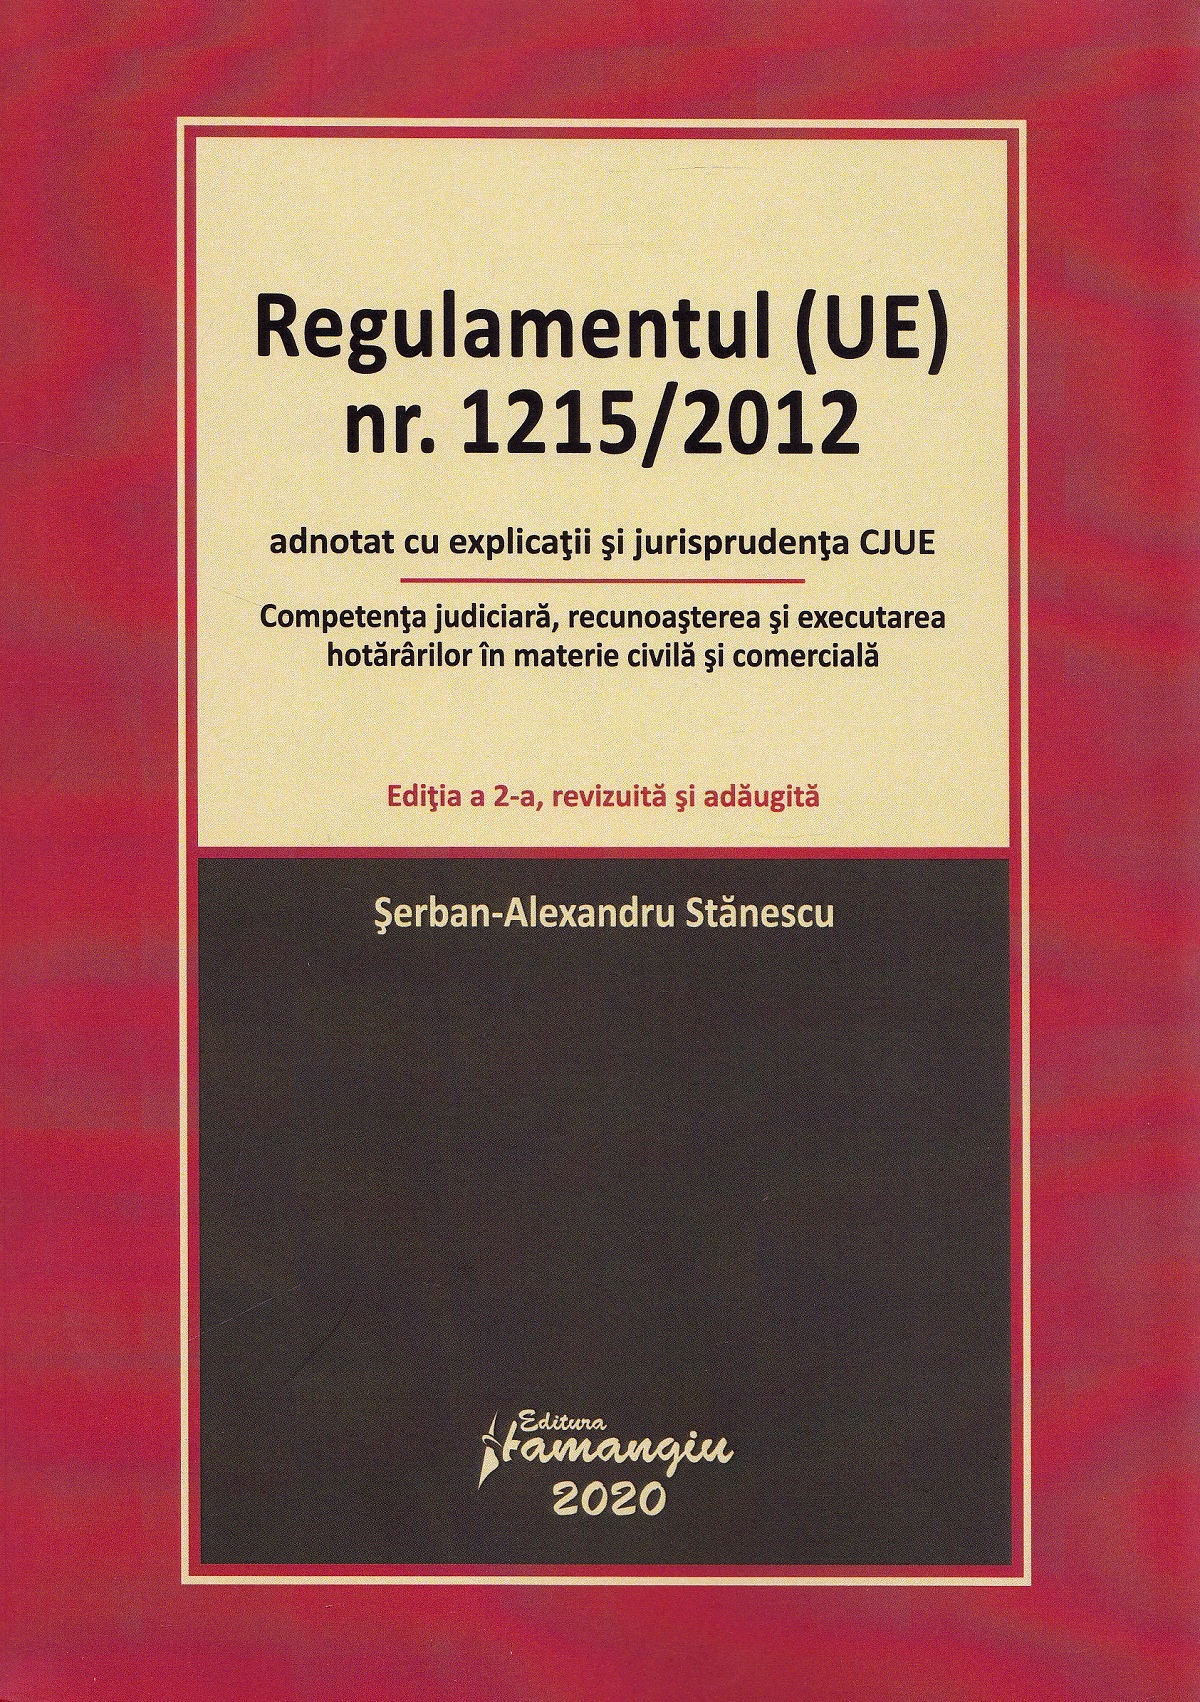 Regulamentul (UE) Nr. 1215/2012 adnotat cu explicatii si jurisprudenta CJUE. Editia 2 - Serban-Alexandru Stanescu